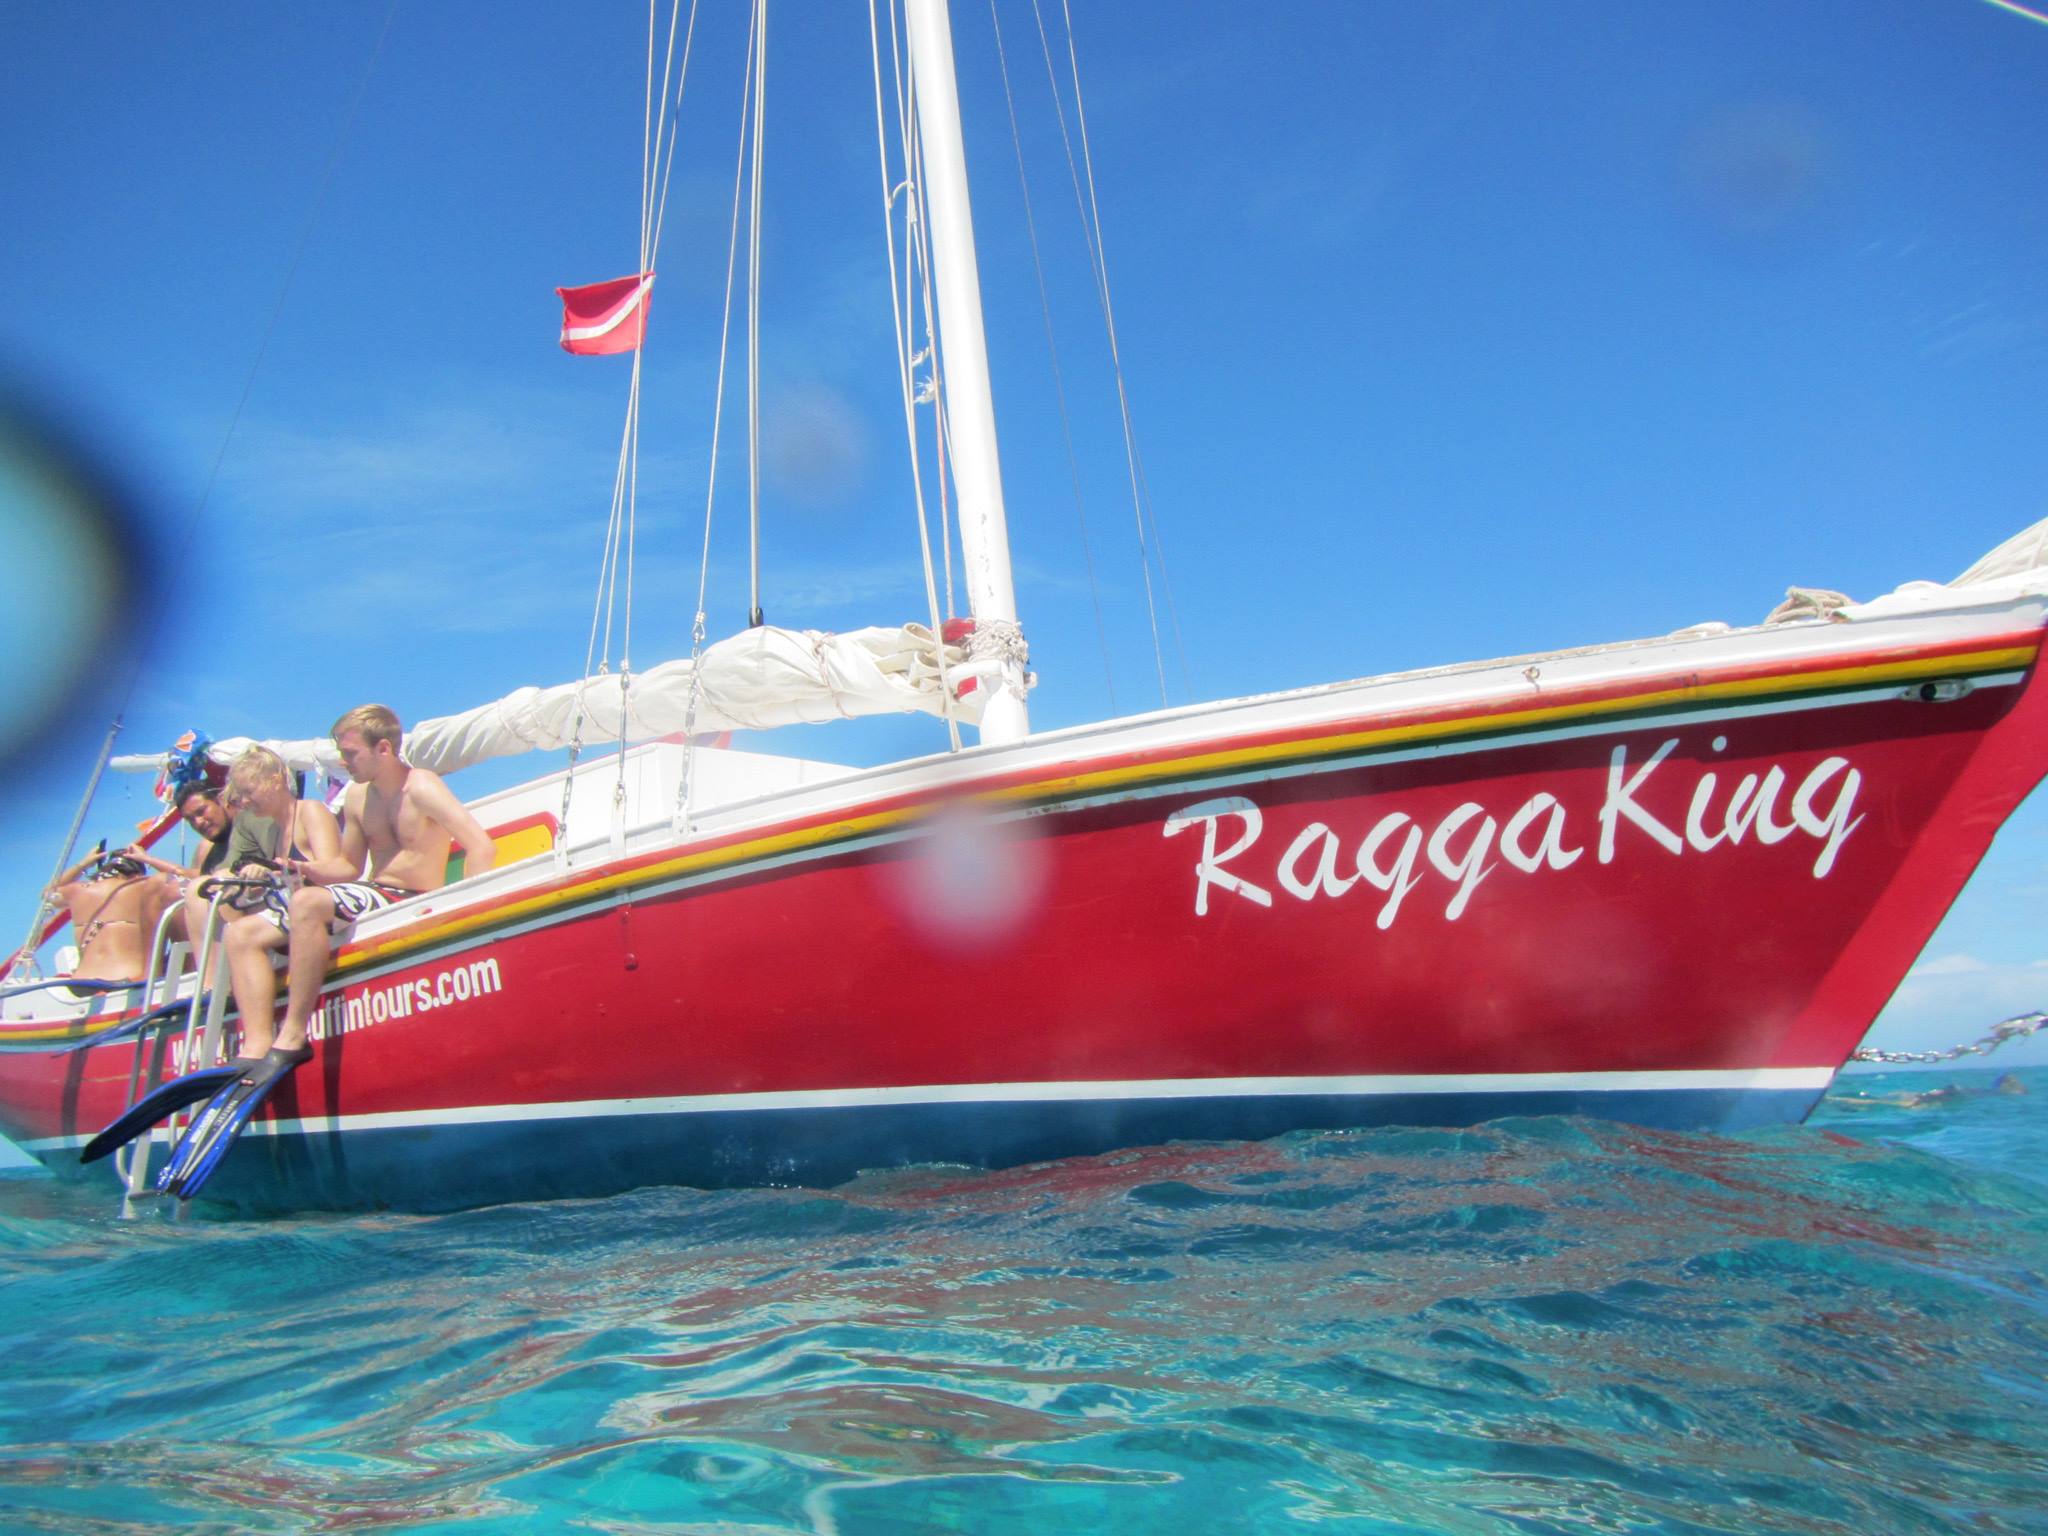 Raggamuffin snorkel boat